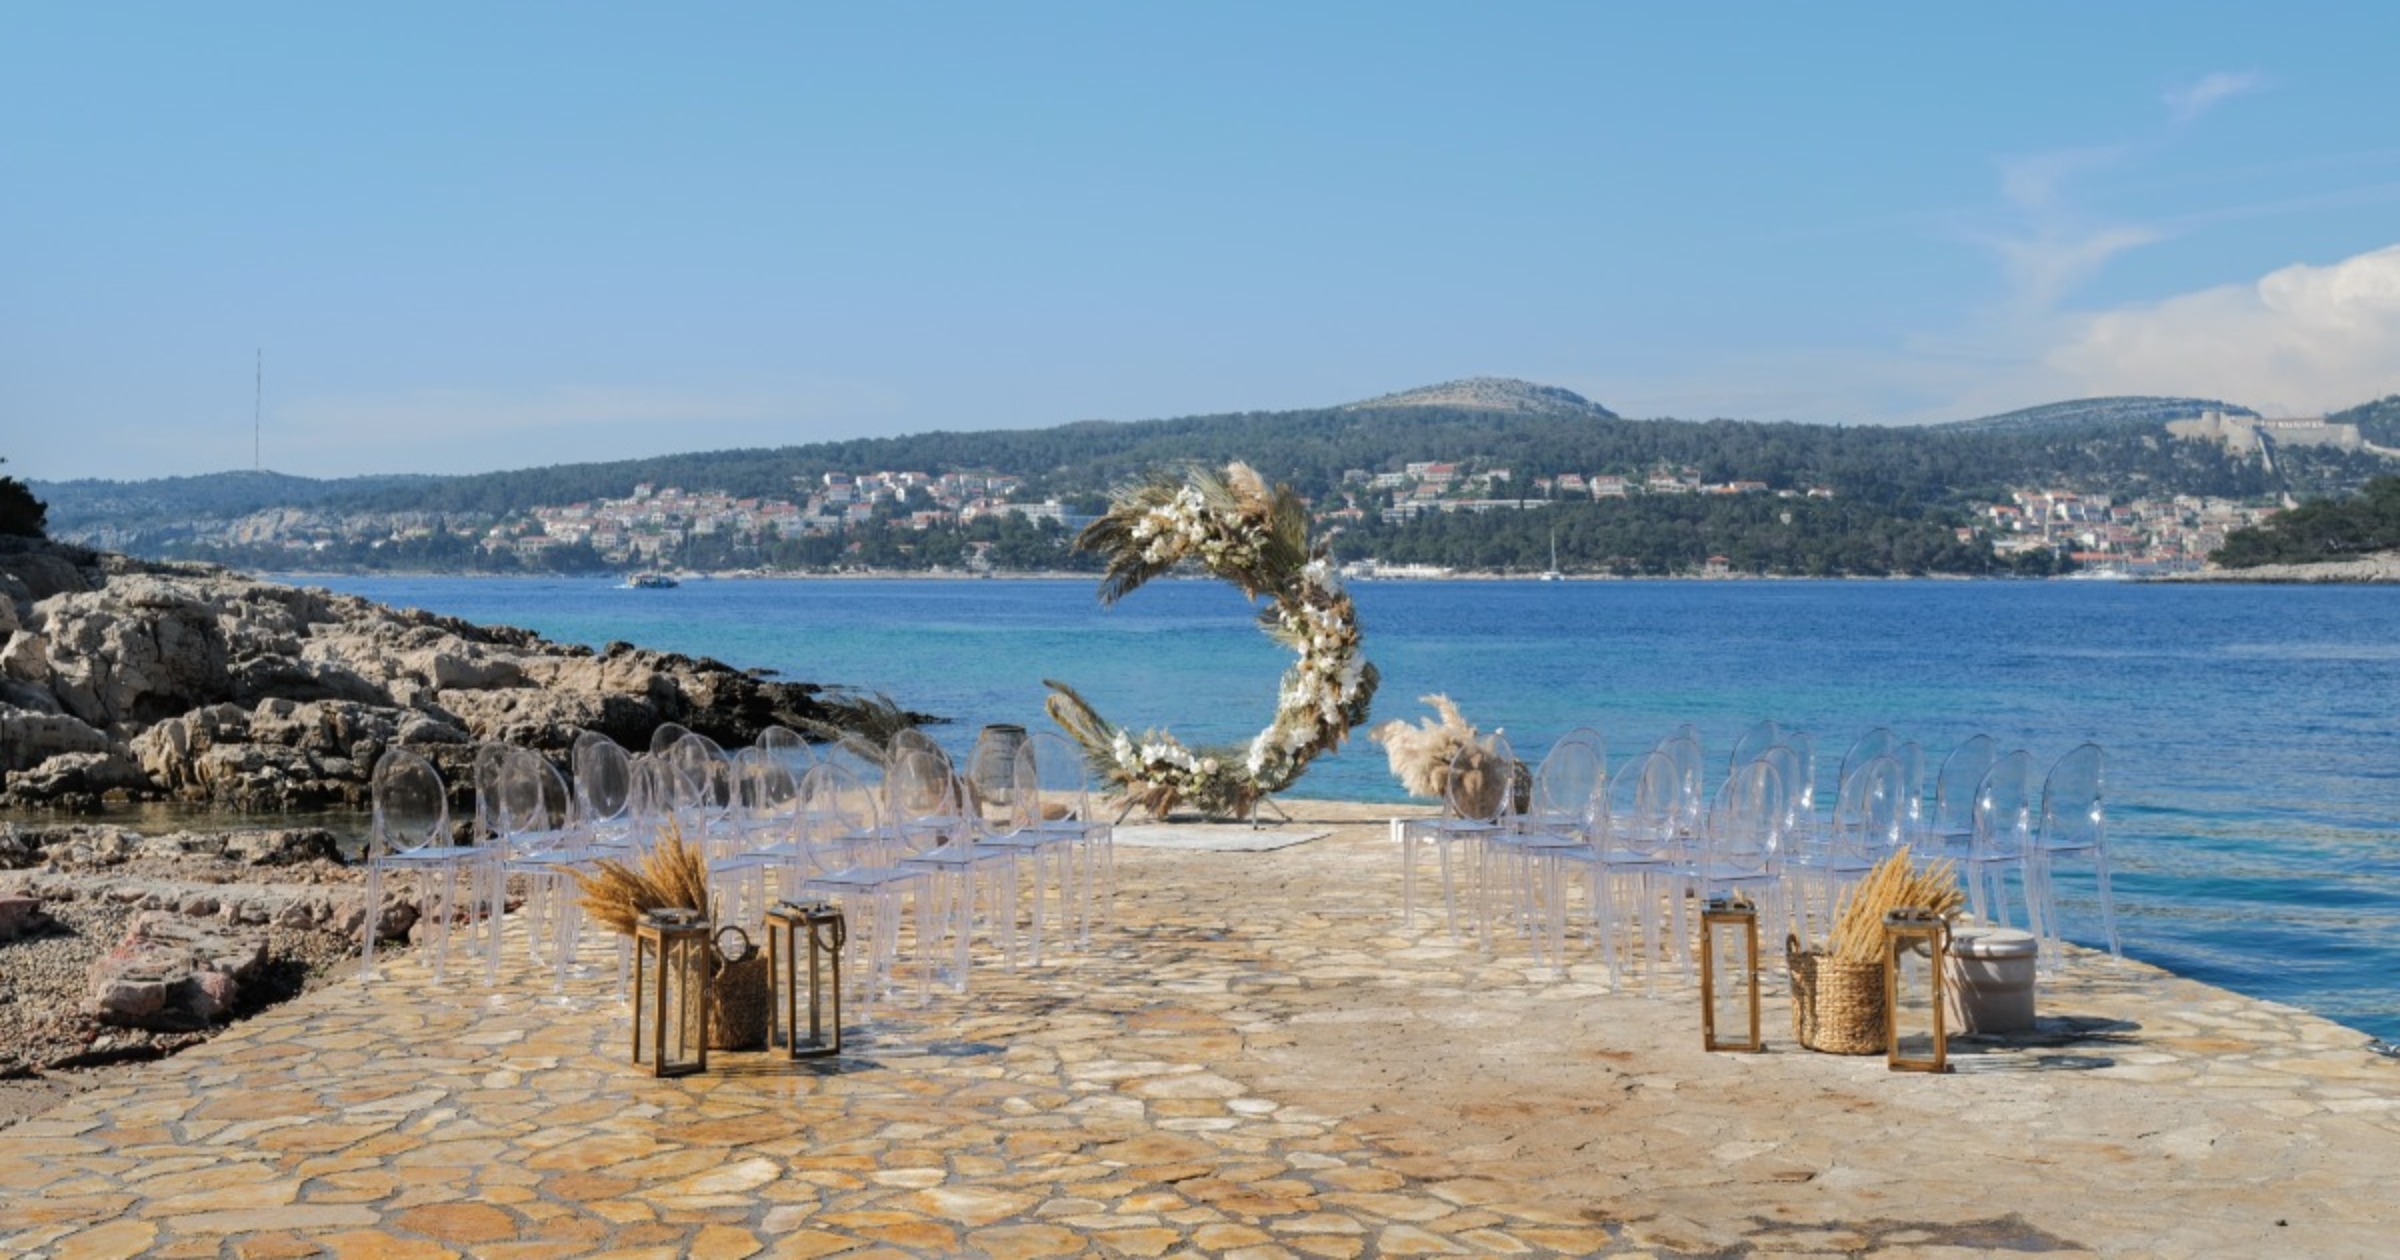 Get Married in Croatia on St. Jerolim Island